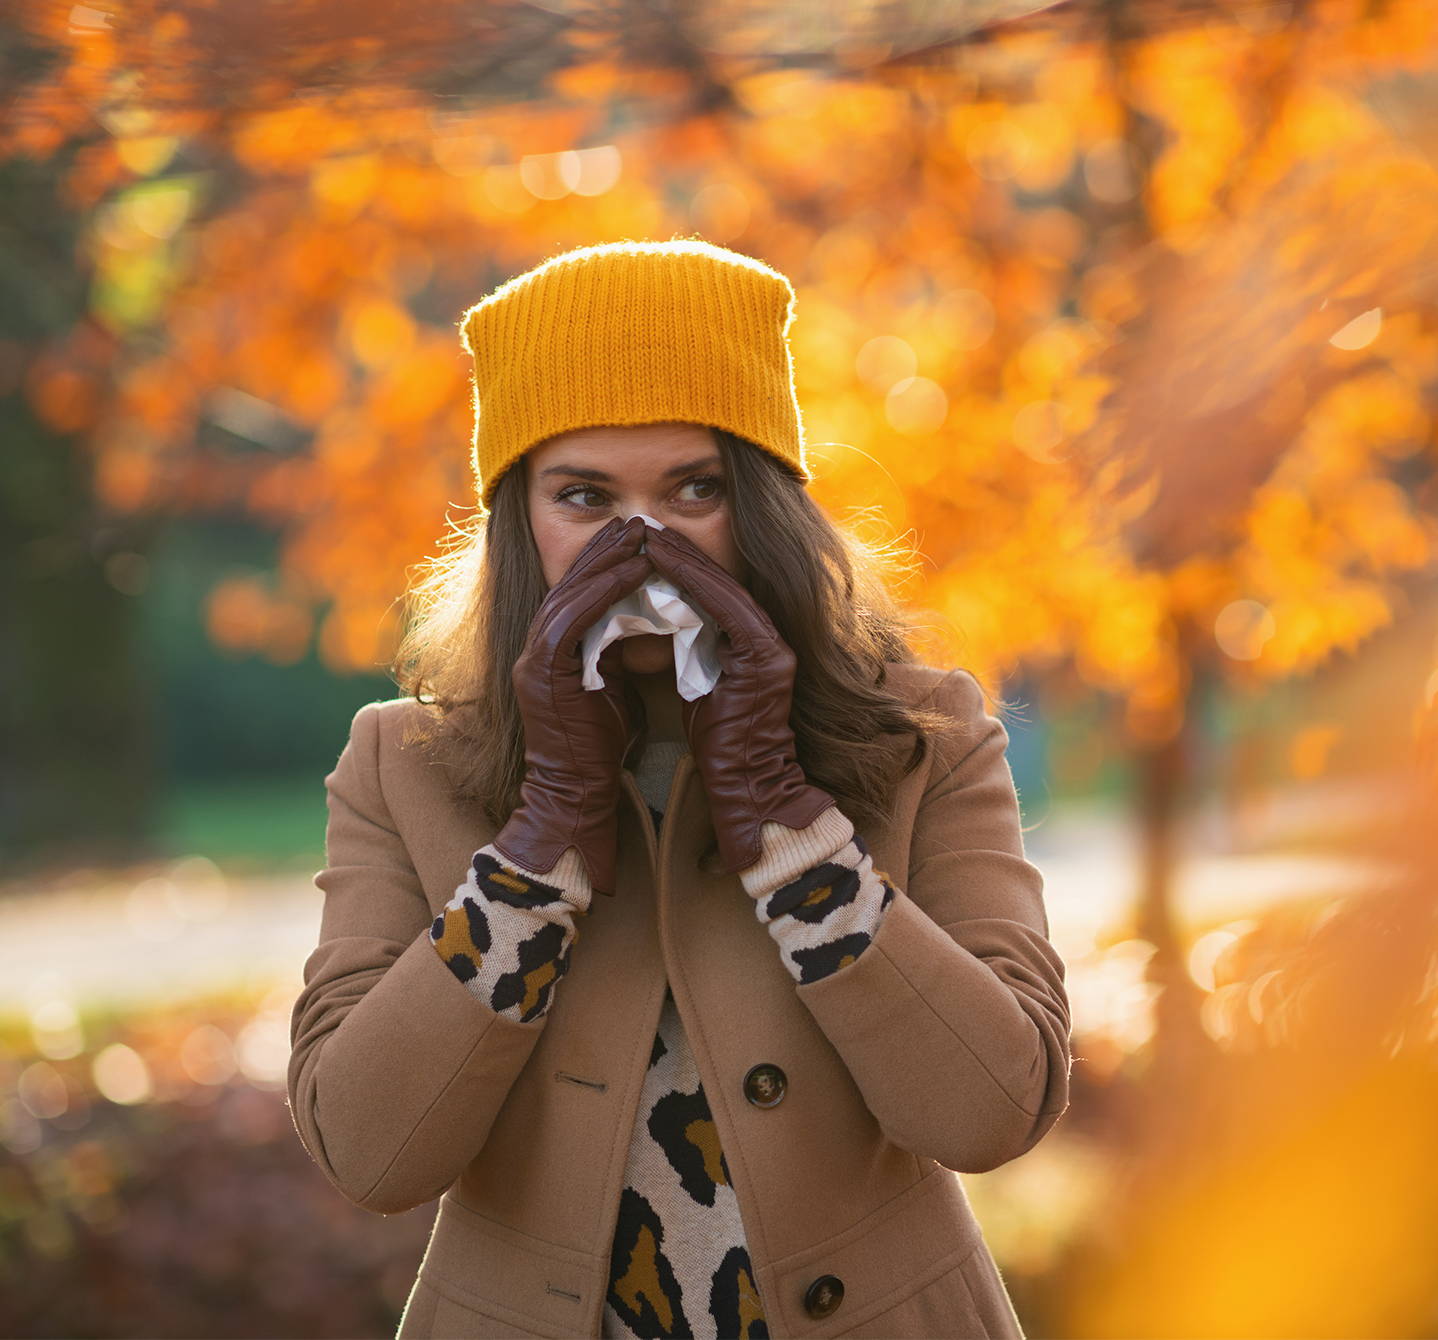 Symptômes d’une allergie aux moisissures : une femme portant un chapeau et des gants se mouche en réaction à la moisissure qui se développe dans les feuilles mortes en automne.